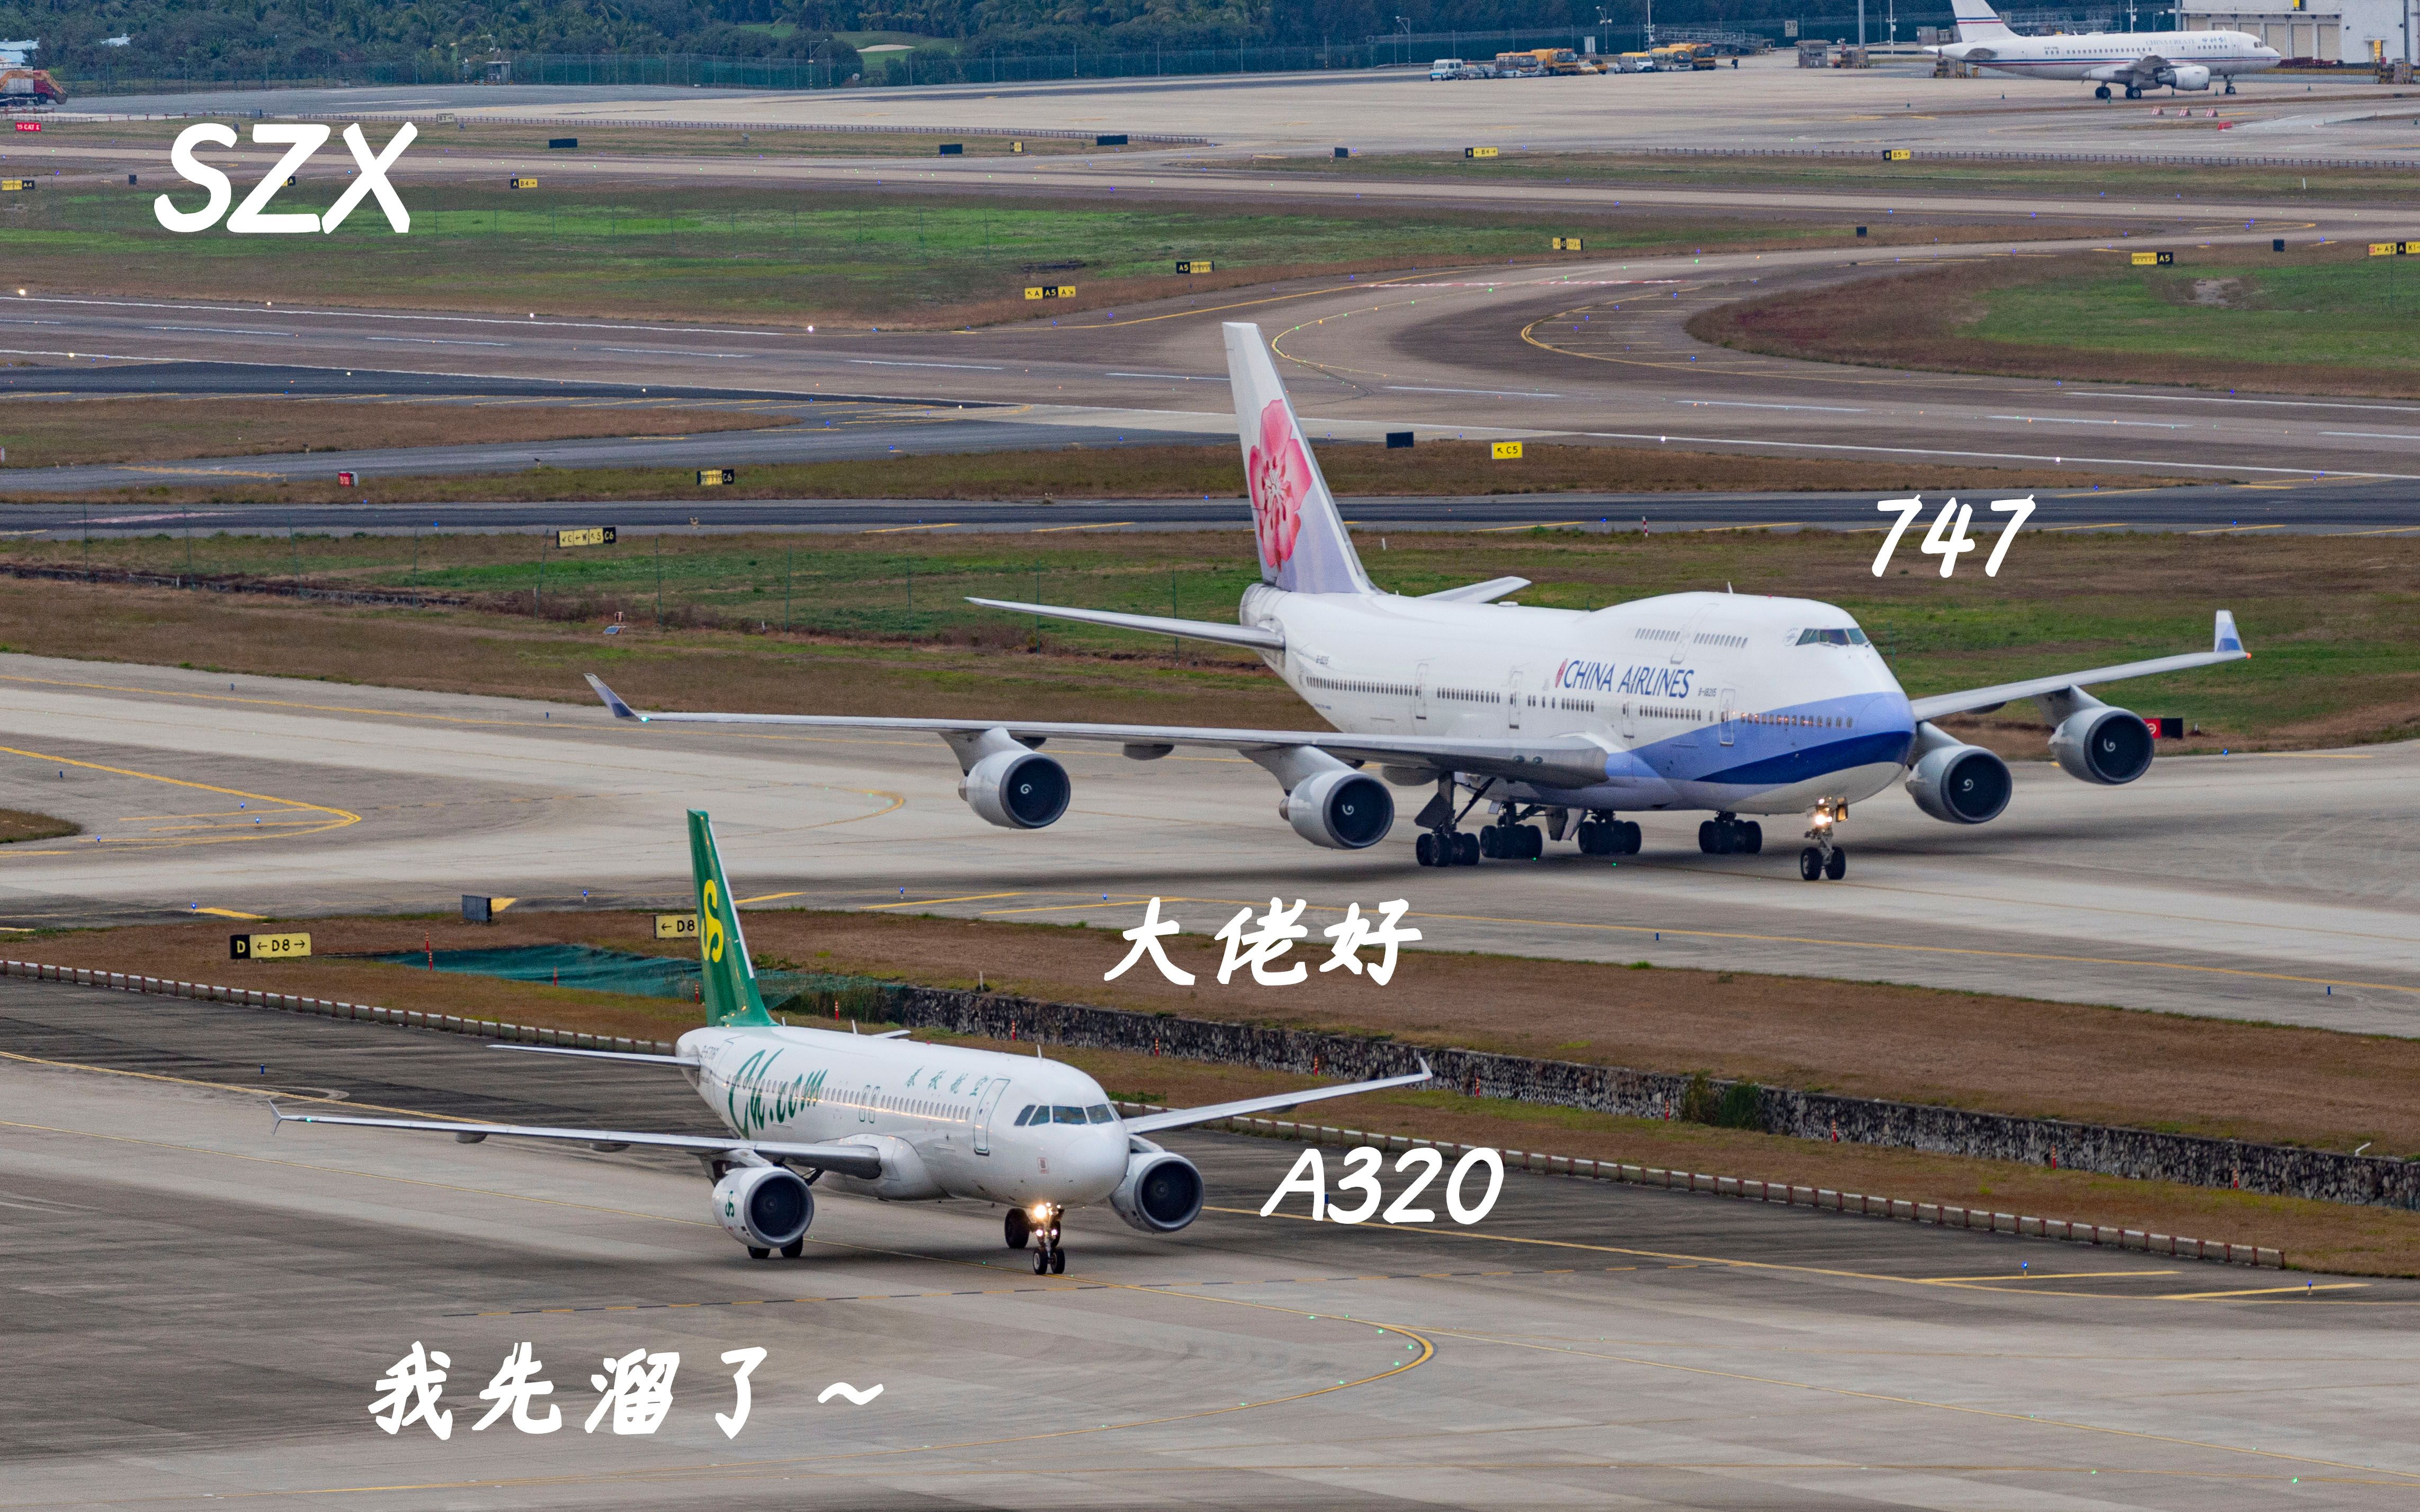 华航波音747滑行道与春秋航空A320并排滑行  弱小无助先溜了